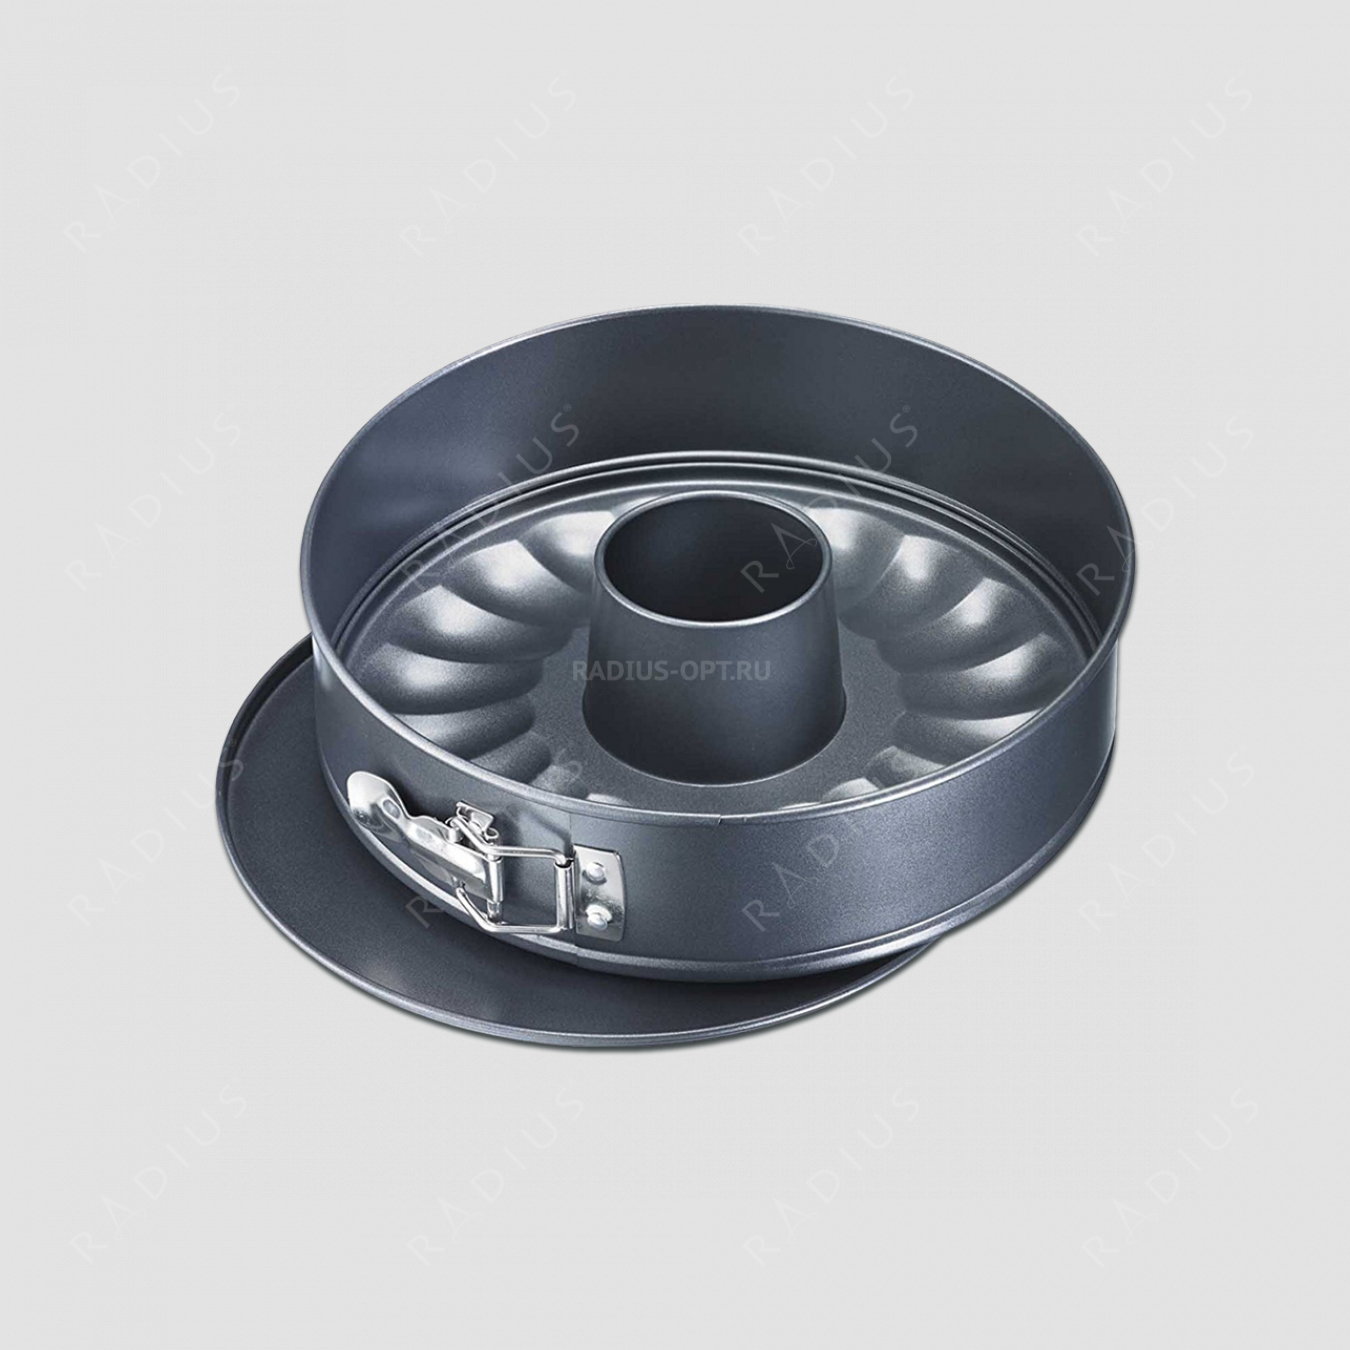 Форма для выпечки круглая, разъемная, диаметр 26 см, с 2-мя основаниями, сталь с антипригарным покрытием, серия Baking, Westmark, Германия